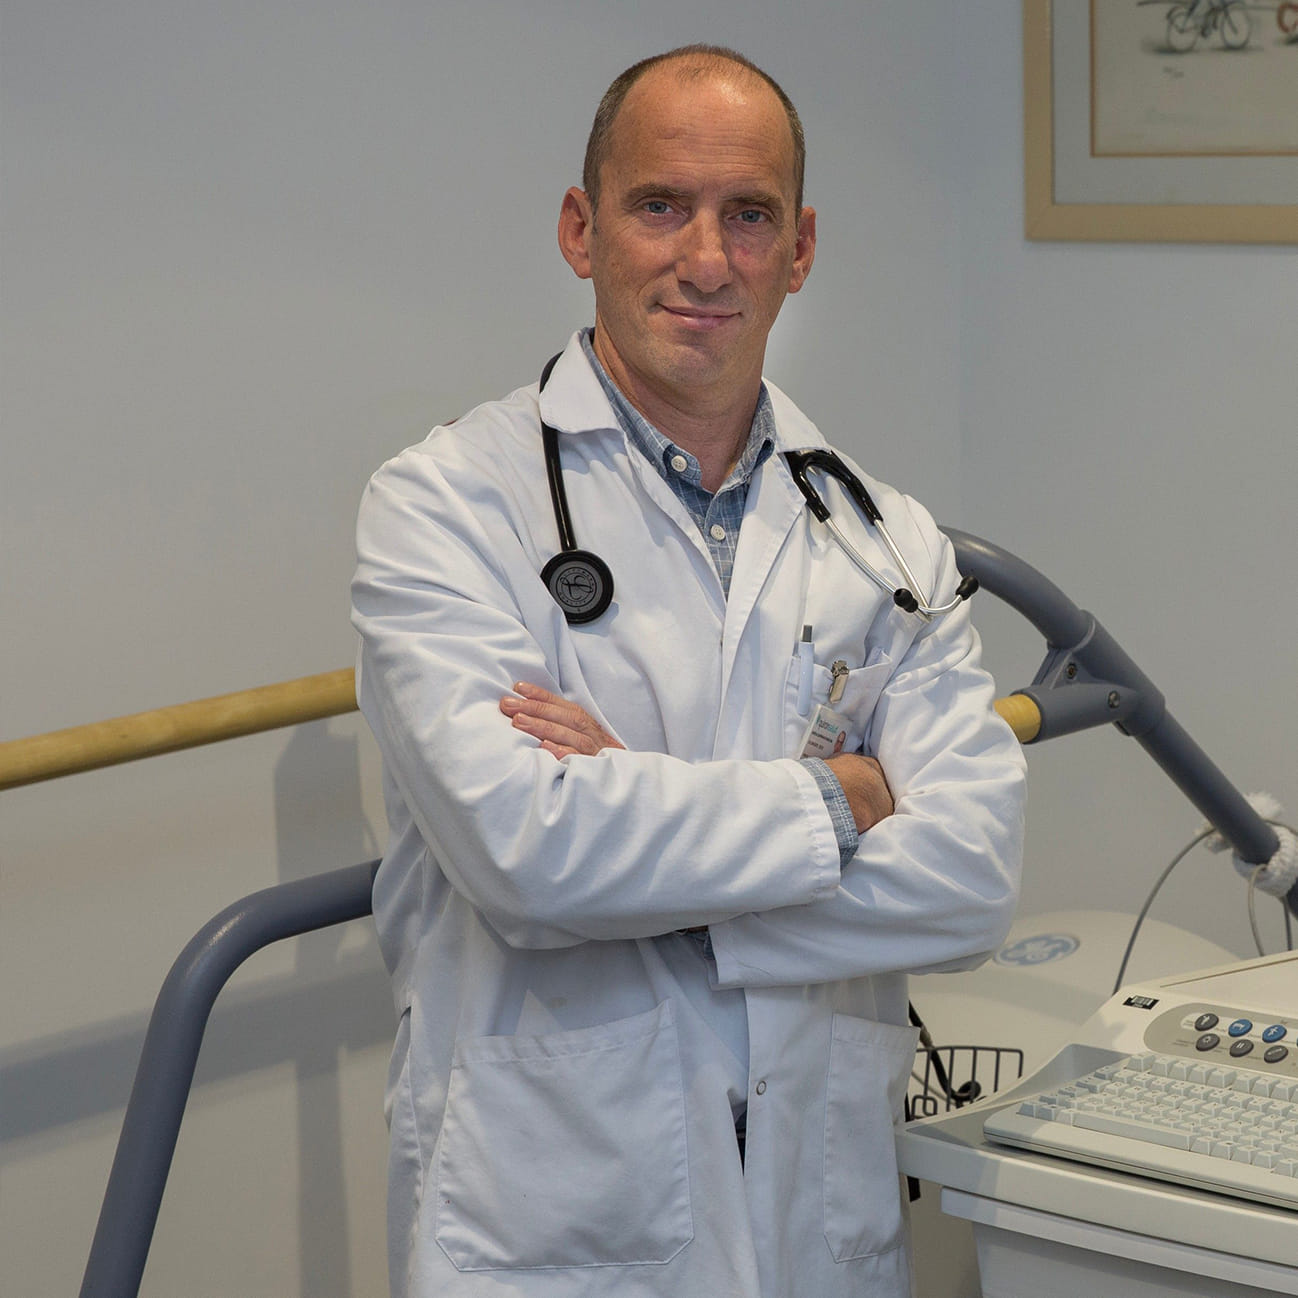 Hablamos con el Dr. Diego Goldwasser, jefe del Servicio de Cardiología del Hospital Quirónsalud Barcelona